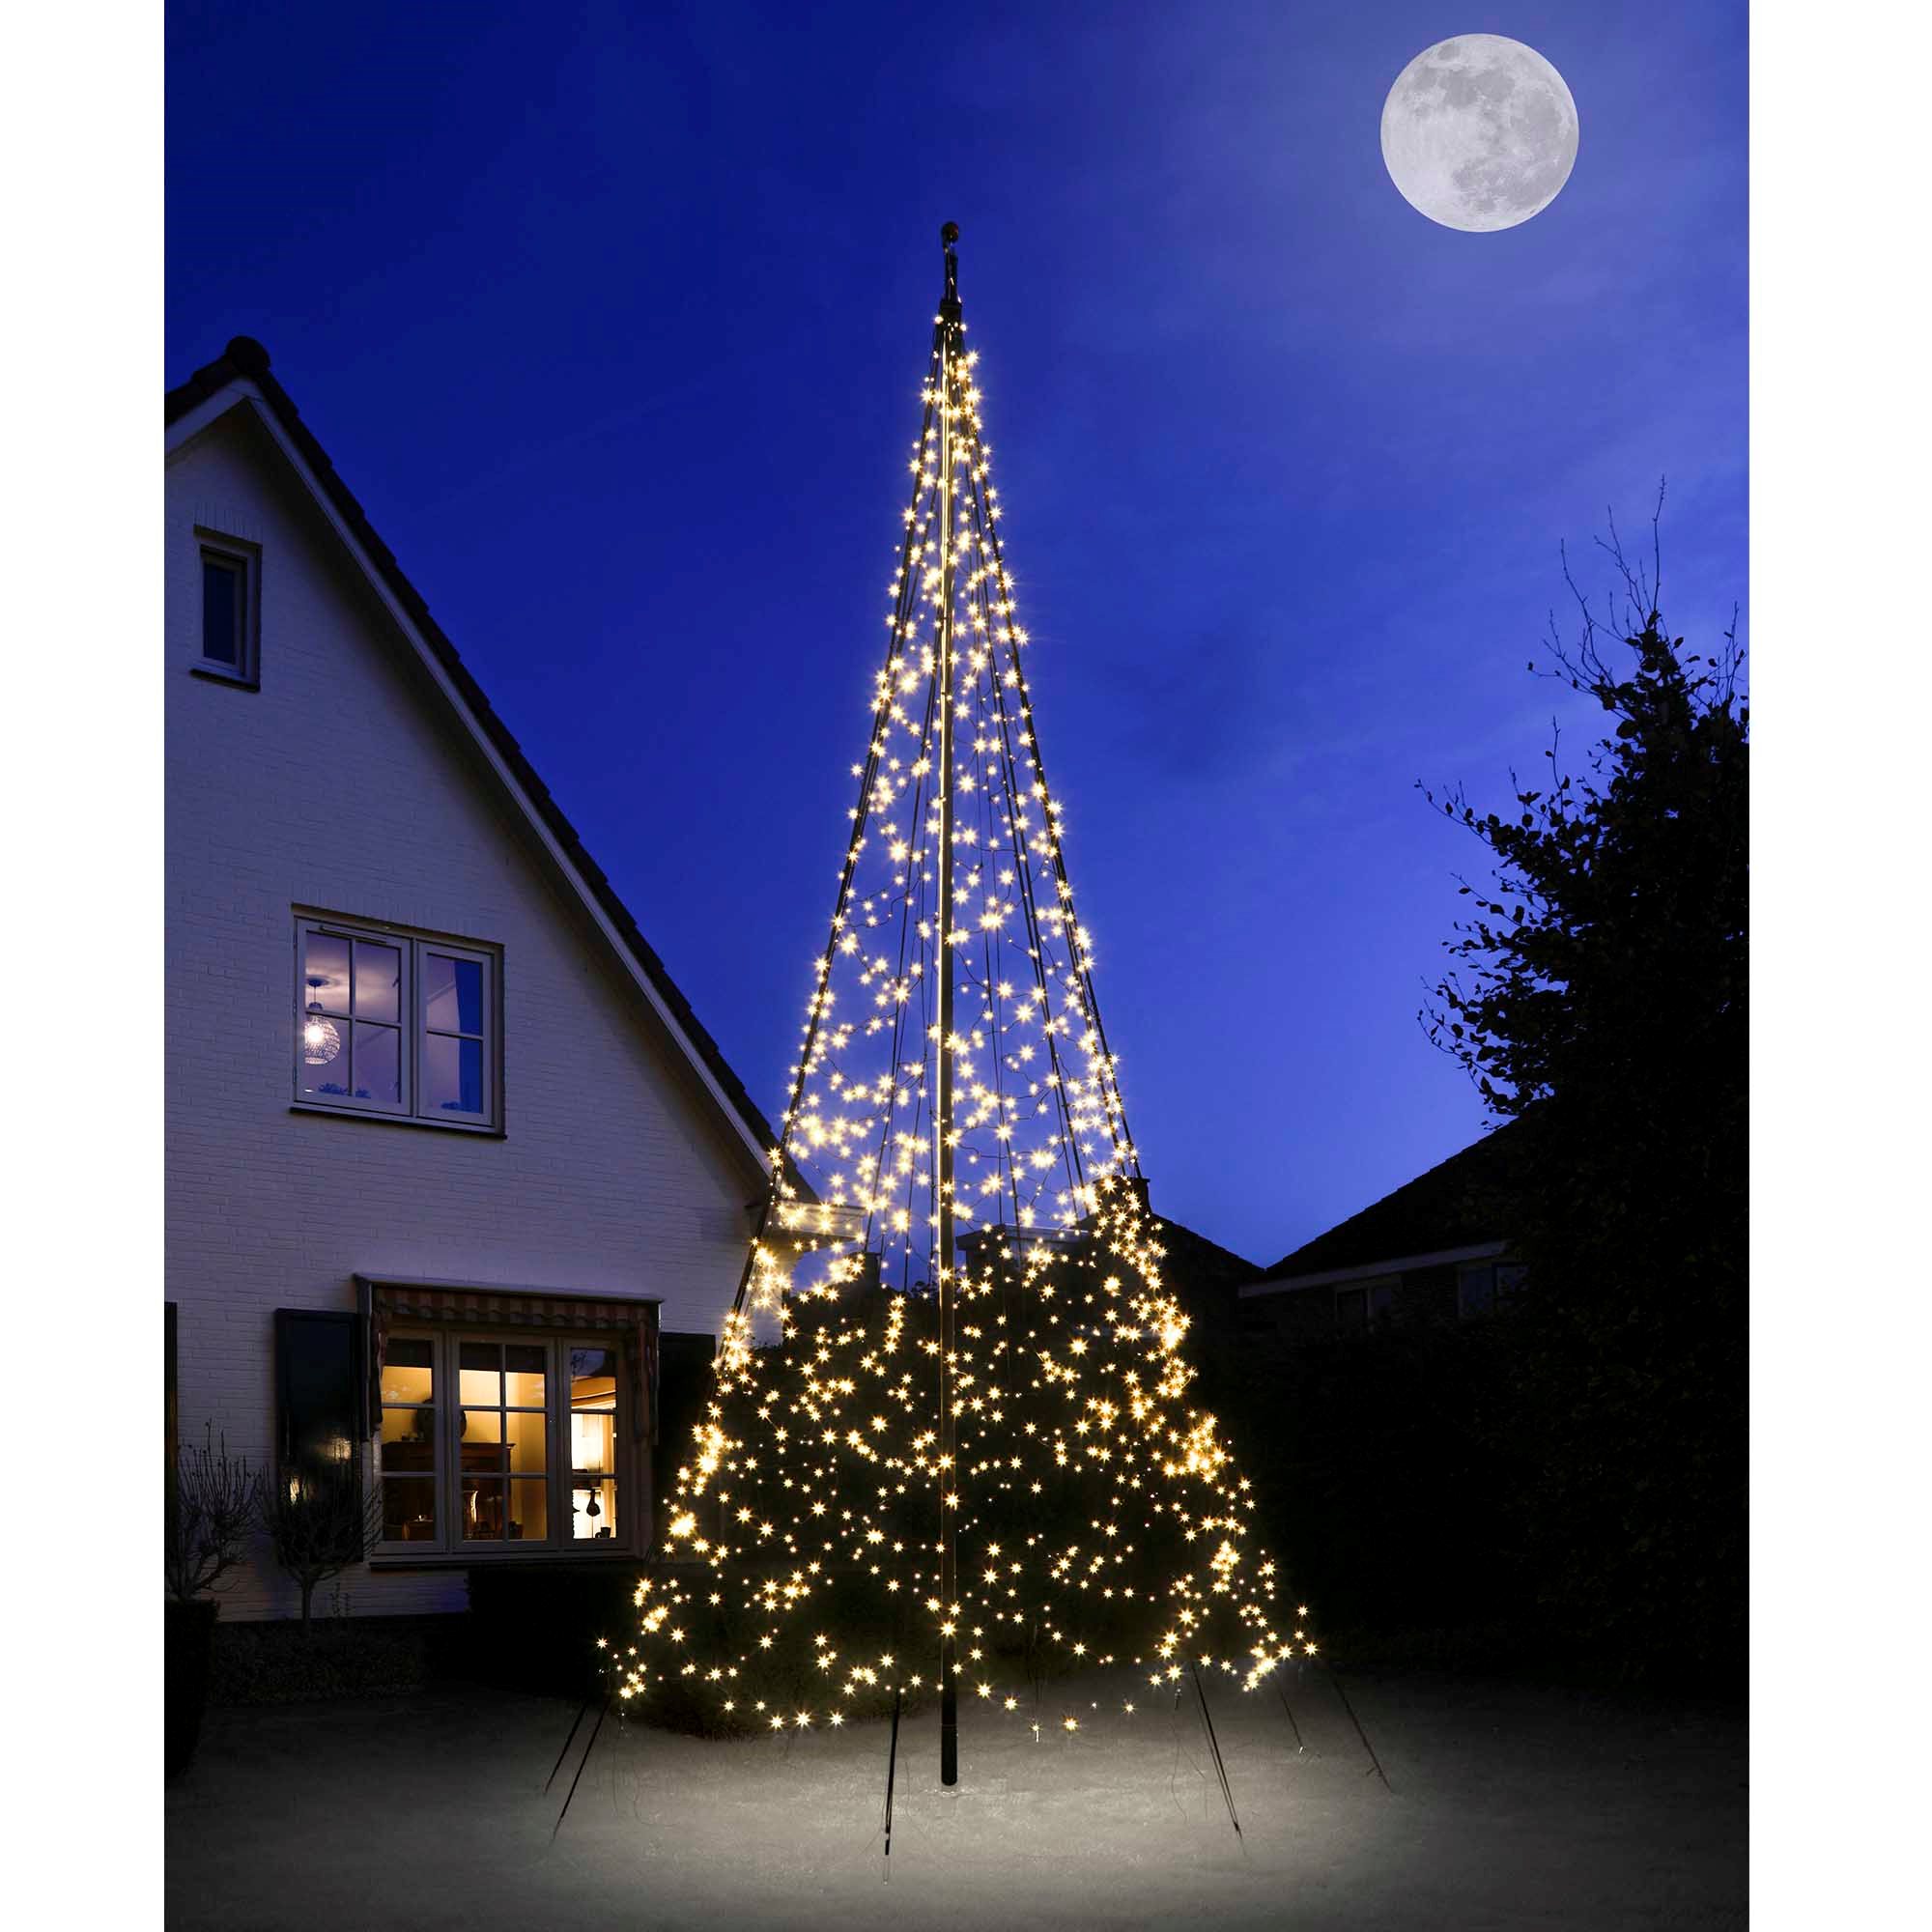 Fairybell til 6 meter højt LED juletræ med 1200 LED'er i varm hvid